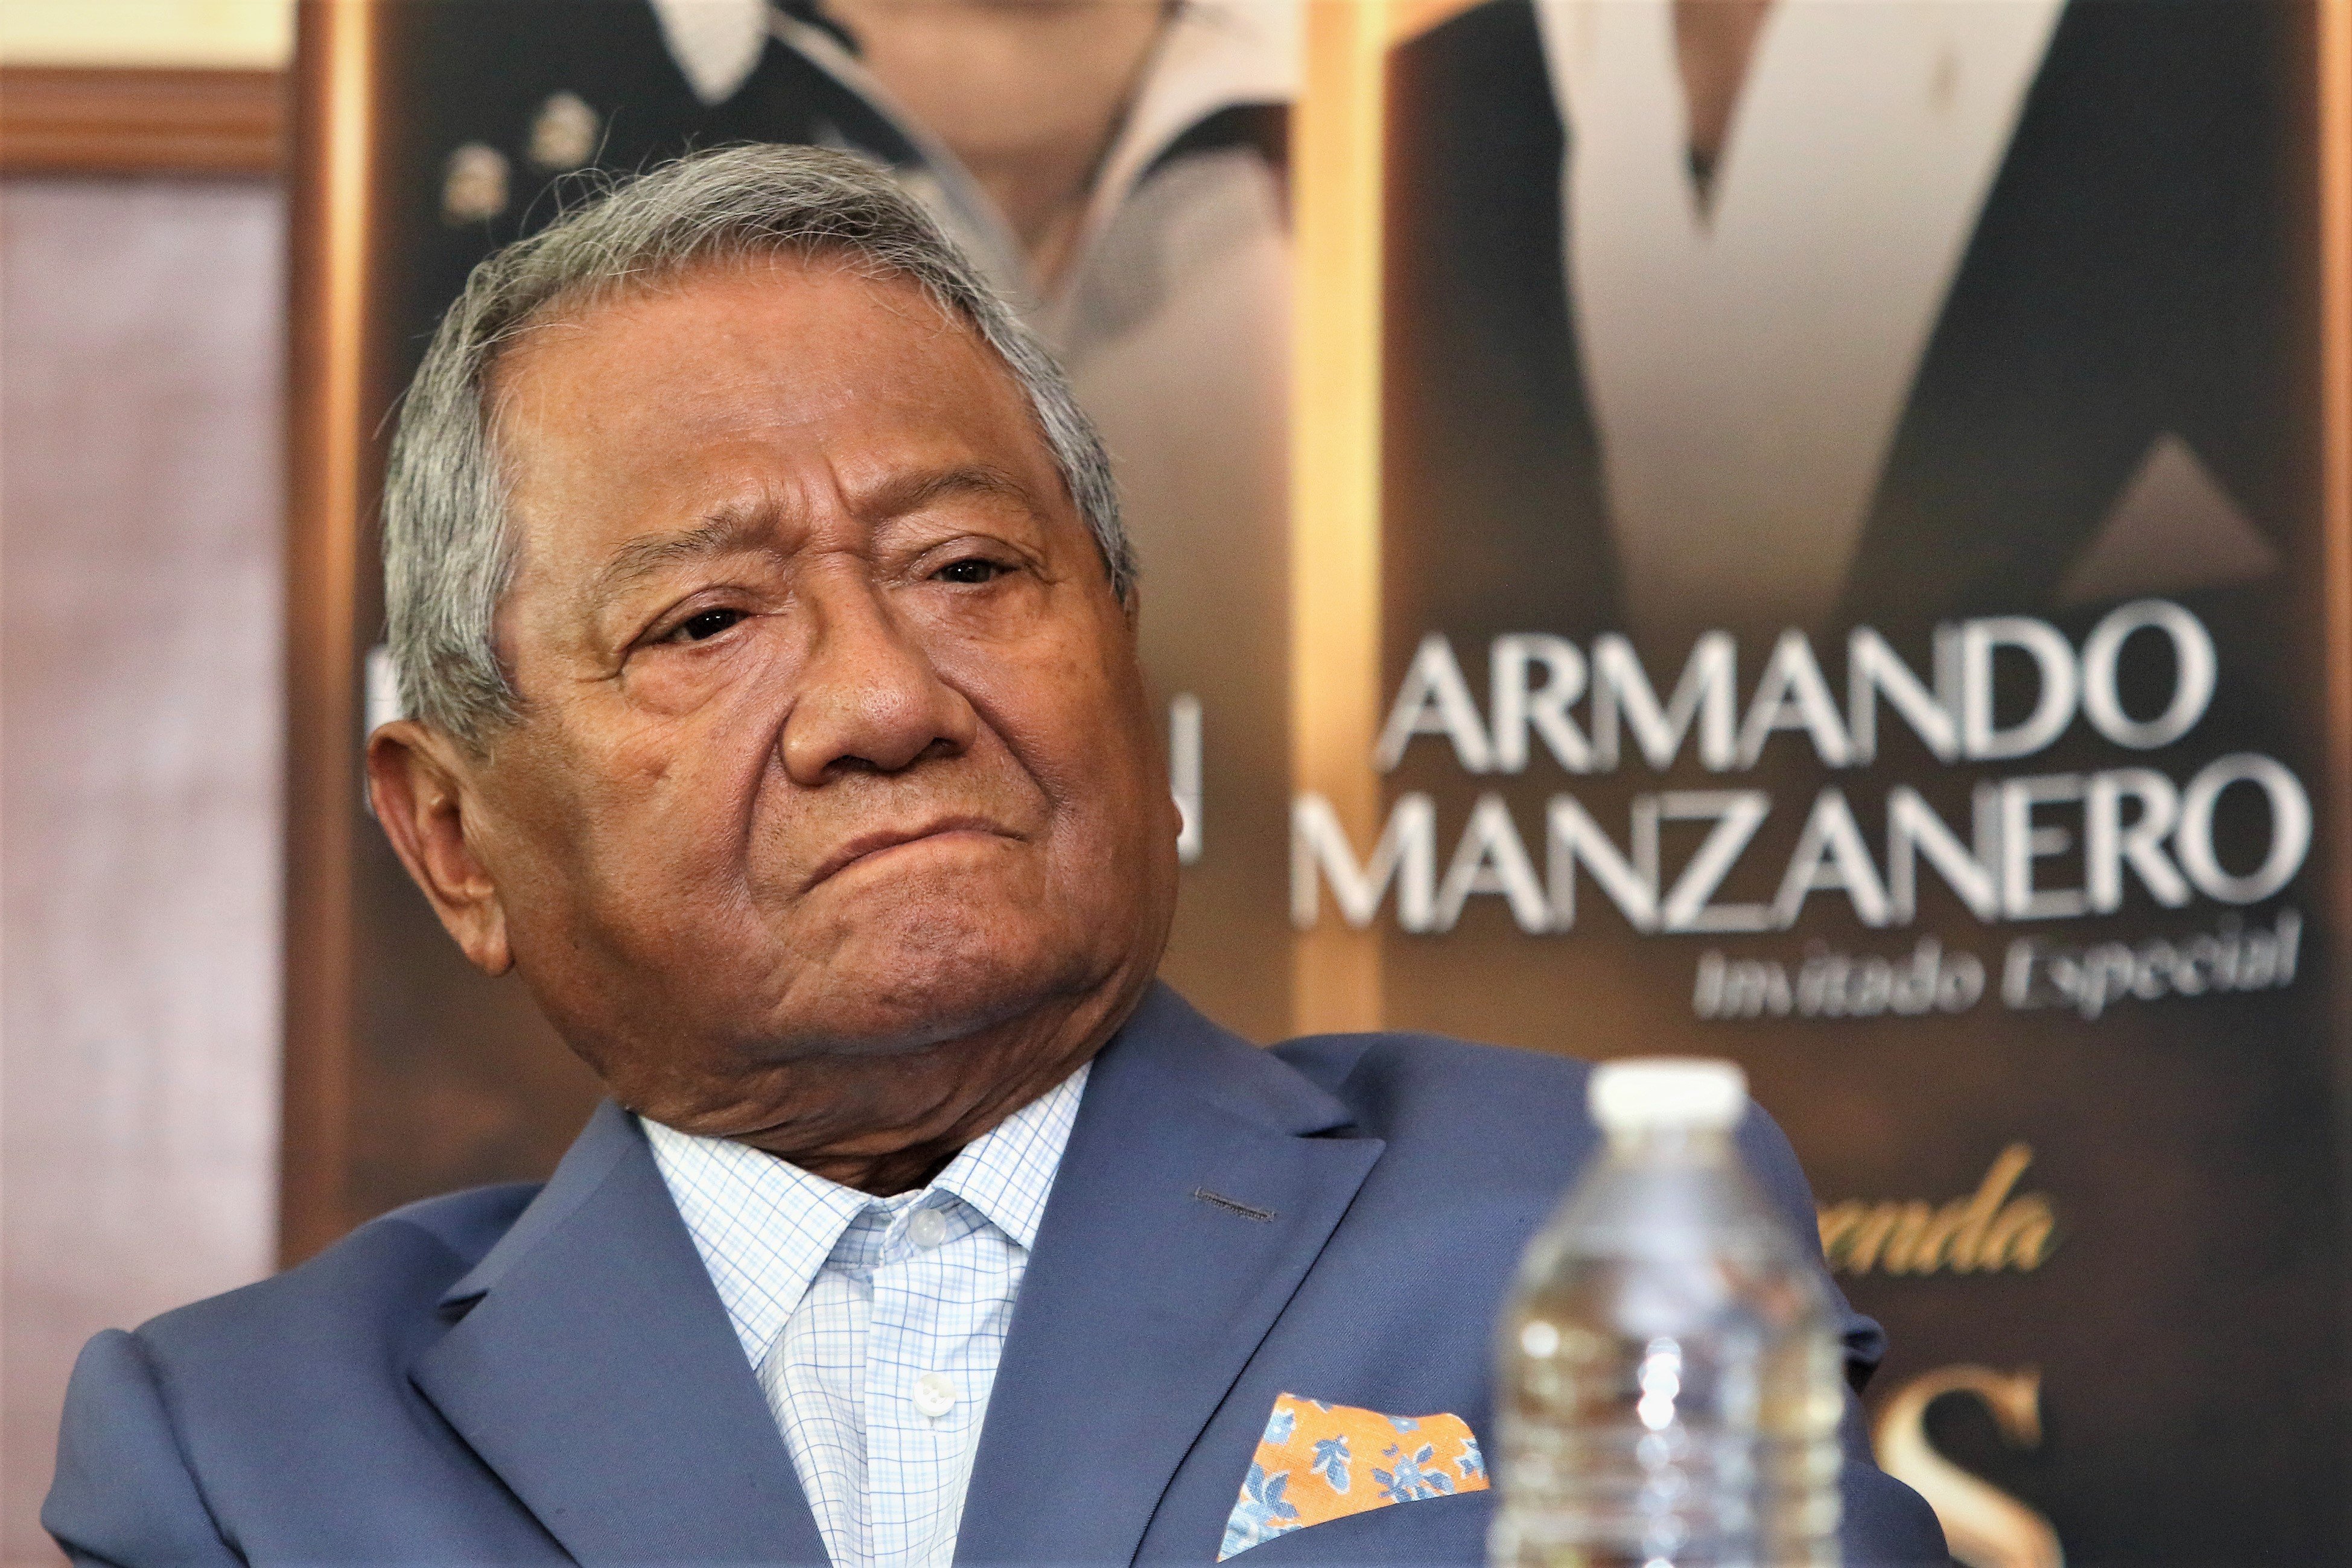 Armando Manzanero en mayo de 2019 en Ciudad de México. | Foto: Getty Images